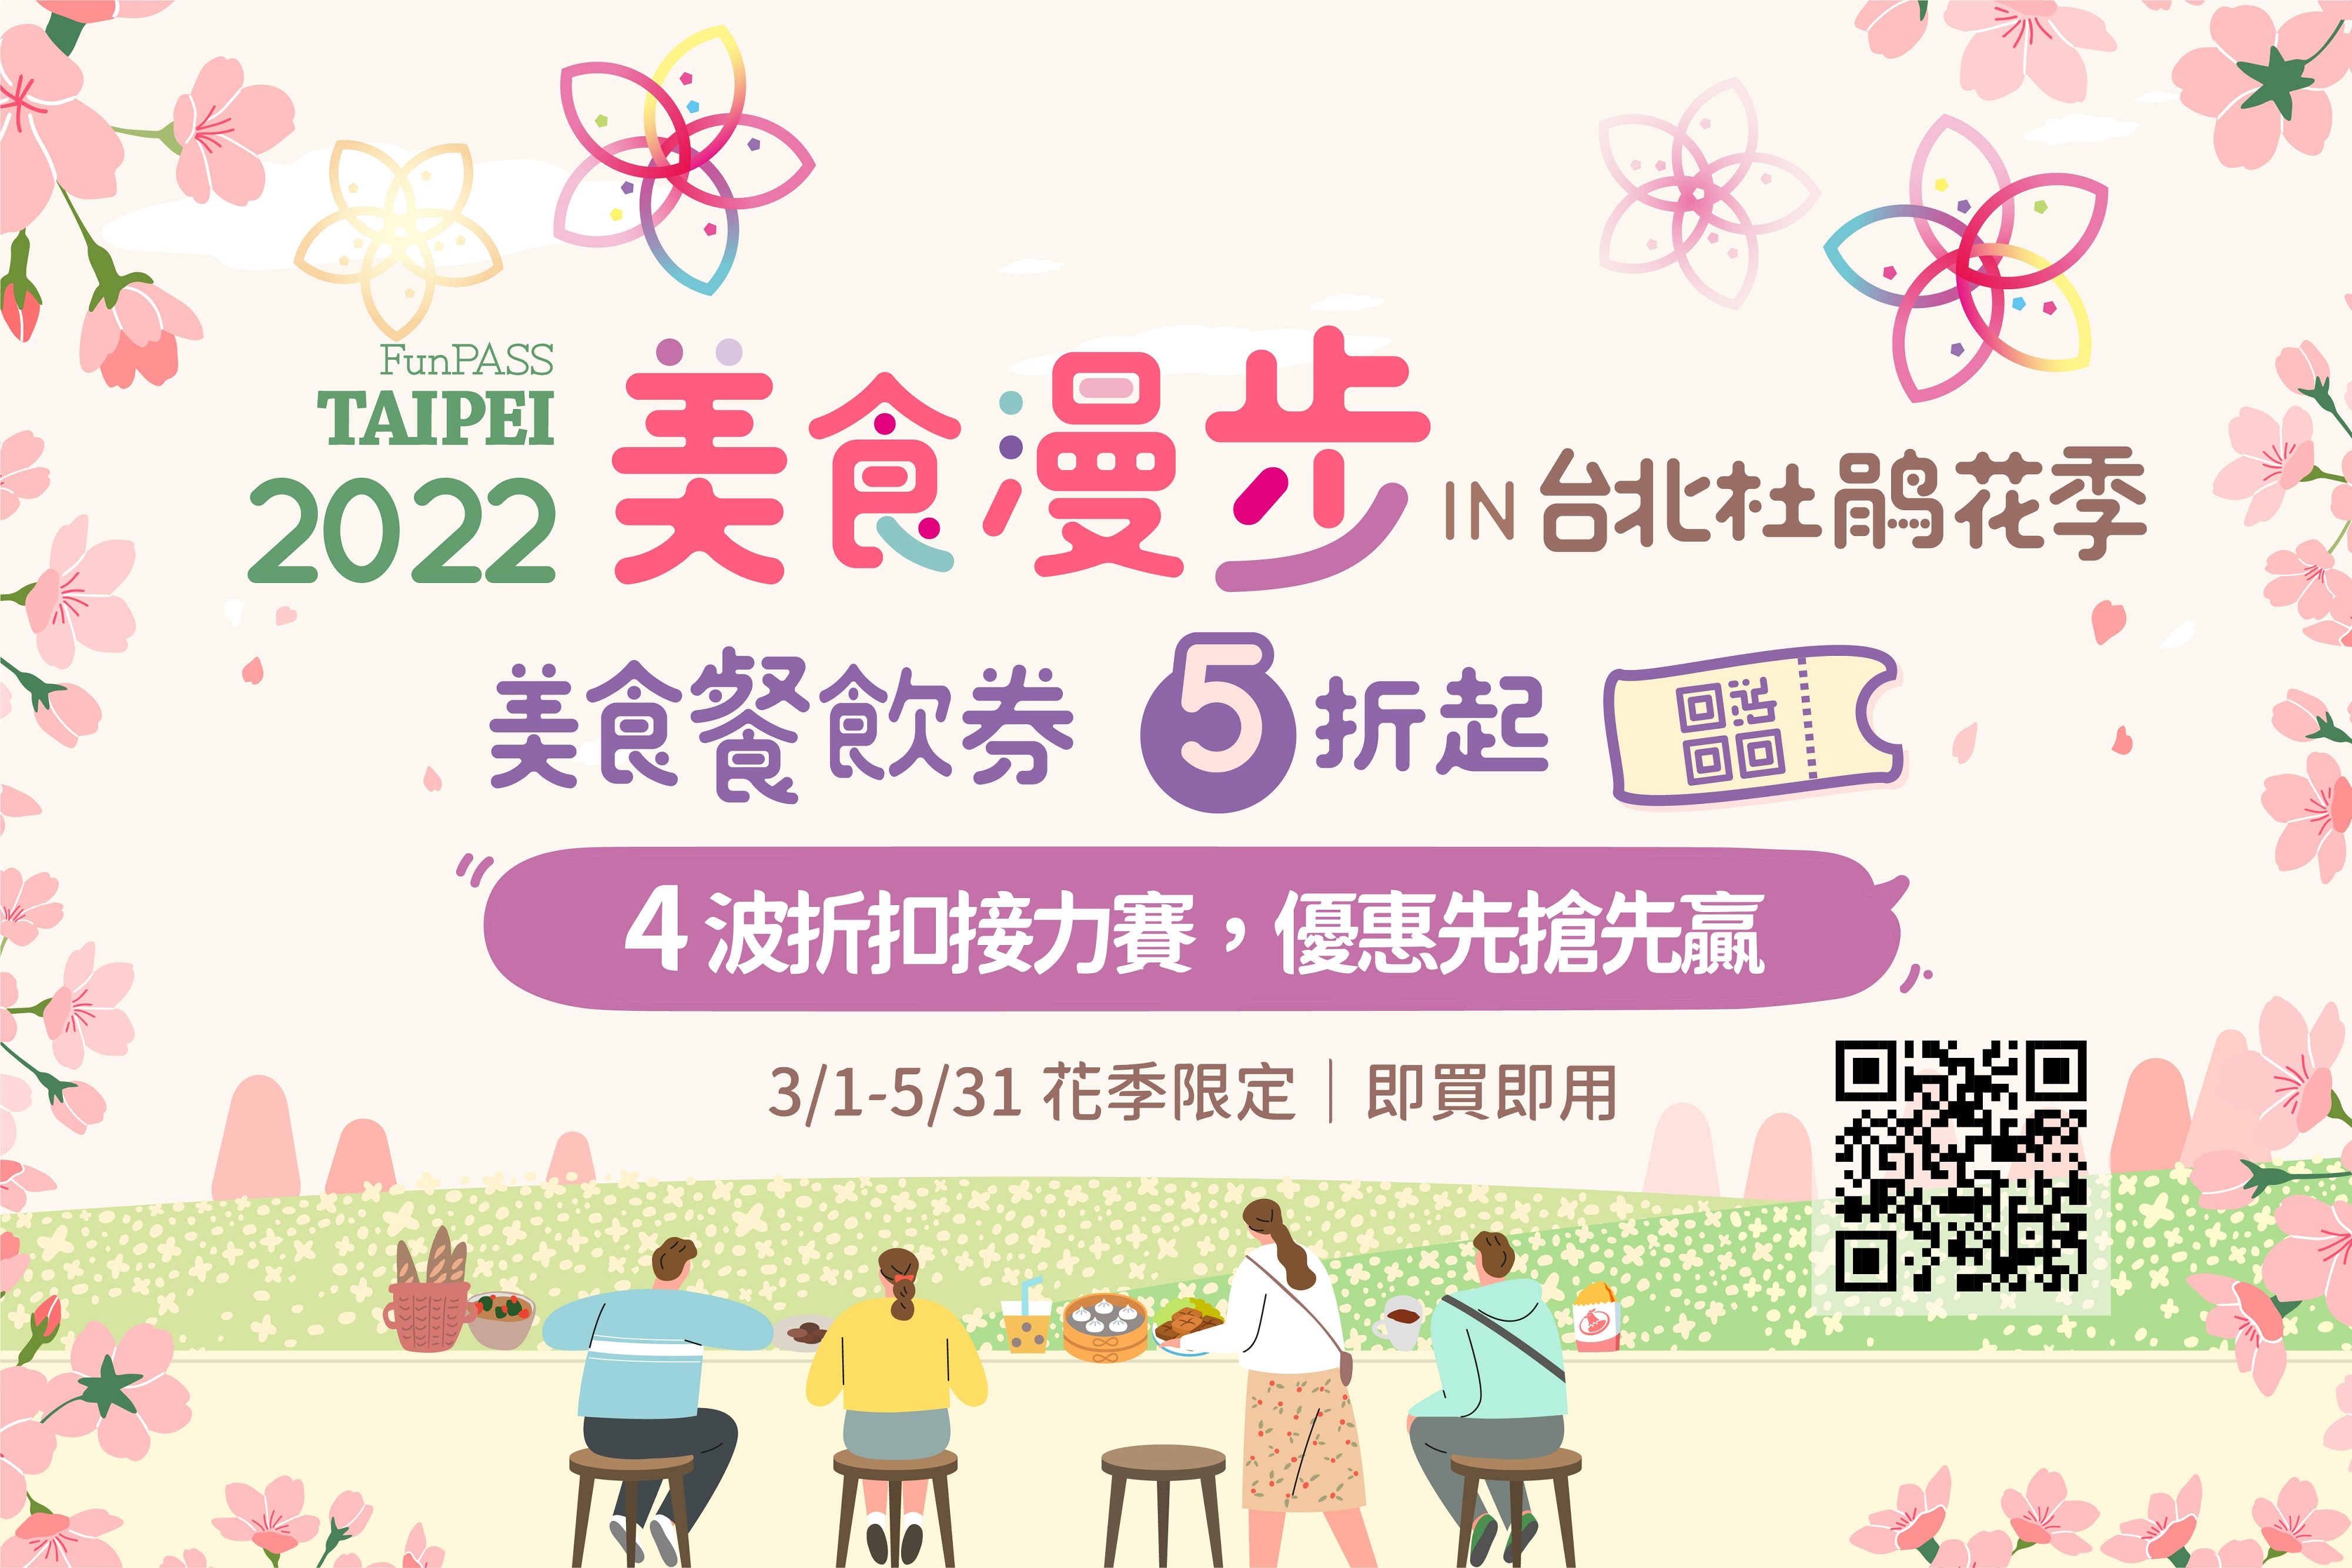 2022 Taipei Azalea Festival poster